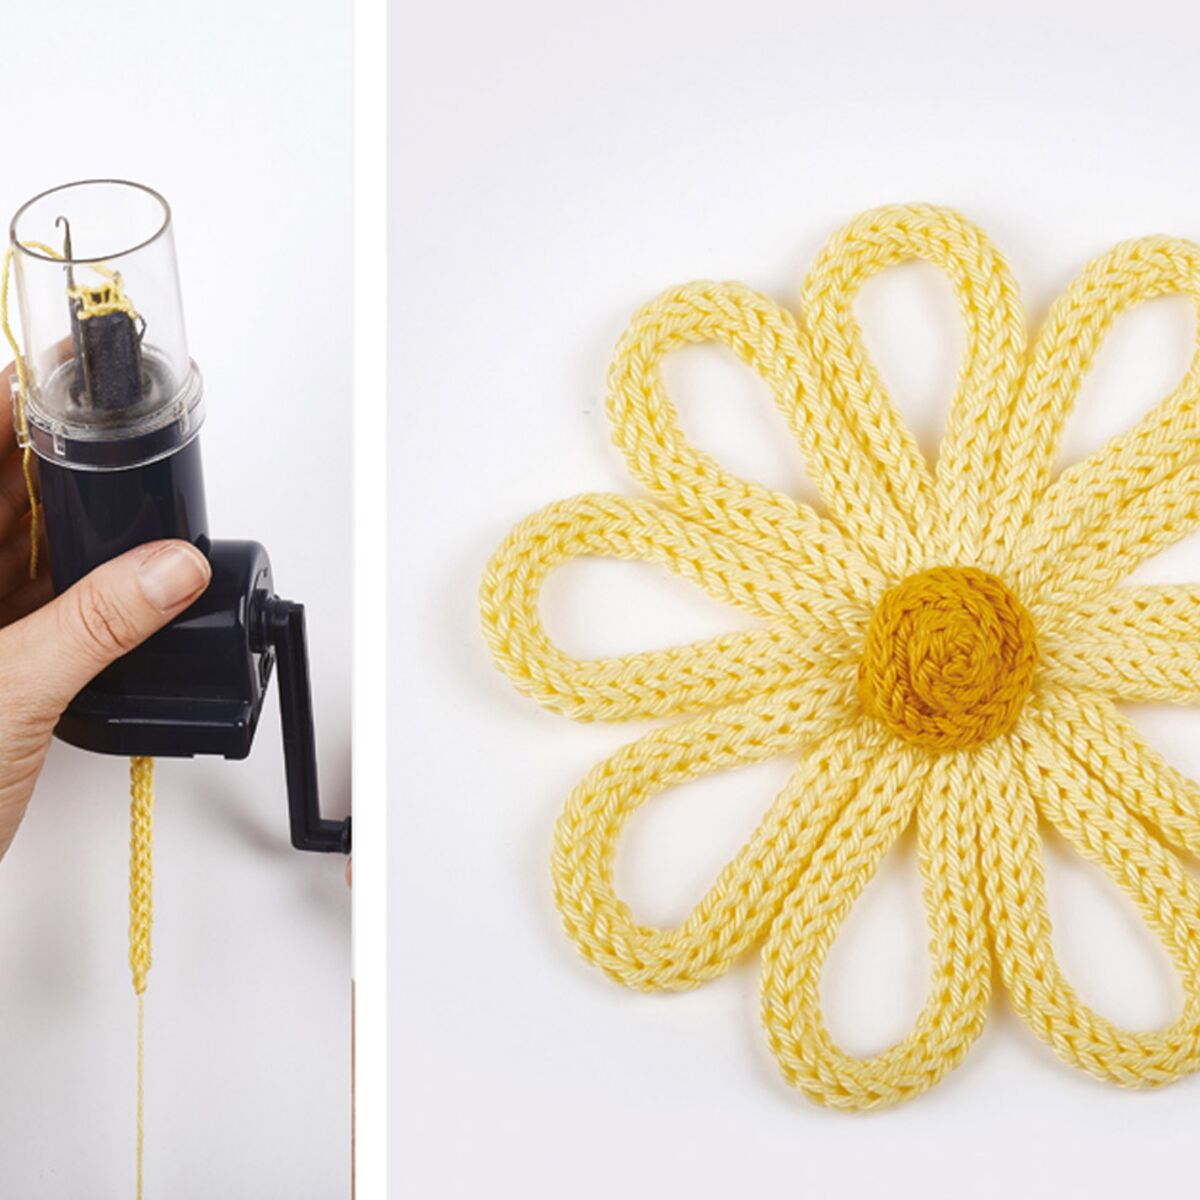 Une fleur jaune à réaliser en tricotin : Femme Actuelle Le MAG